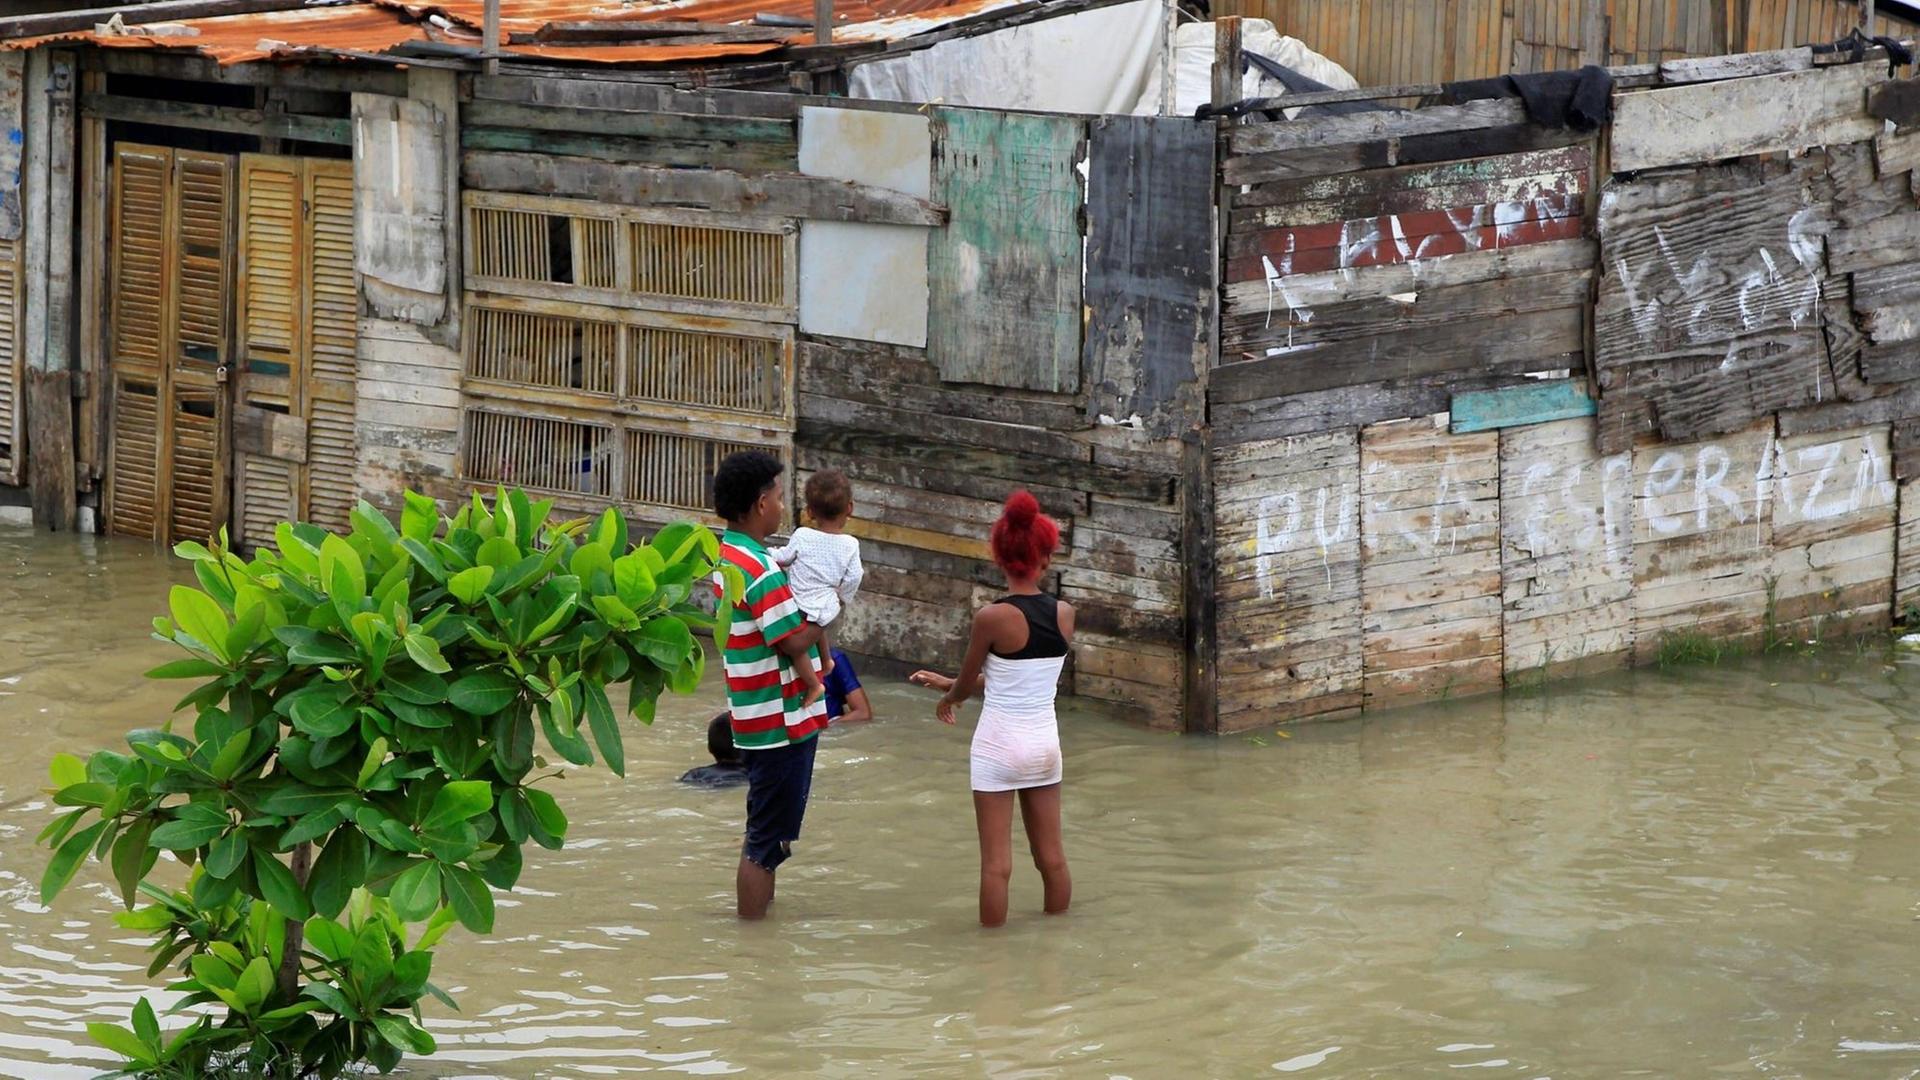 2 Frauen stehen mit ihren Kindern auf dem Arm in einer überfluteten Straße.